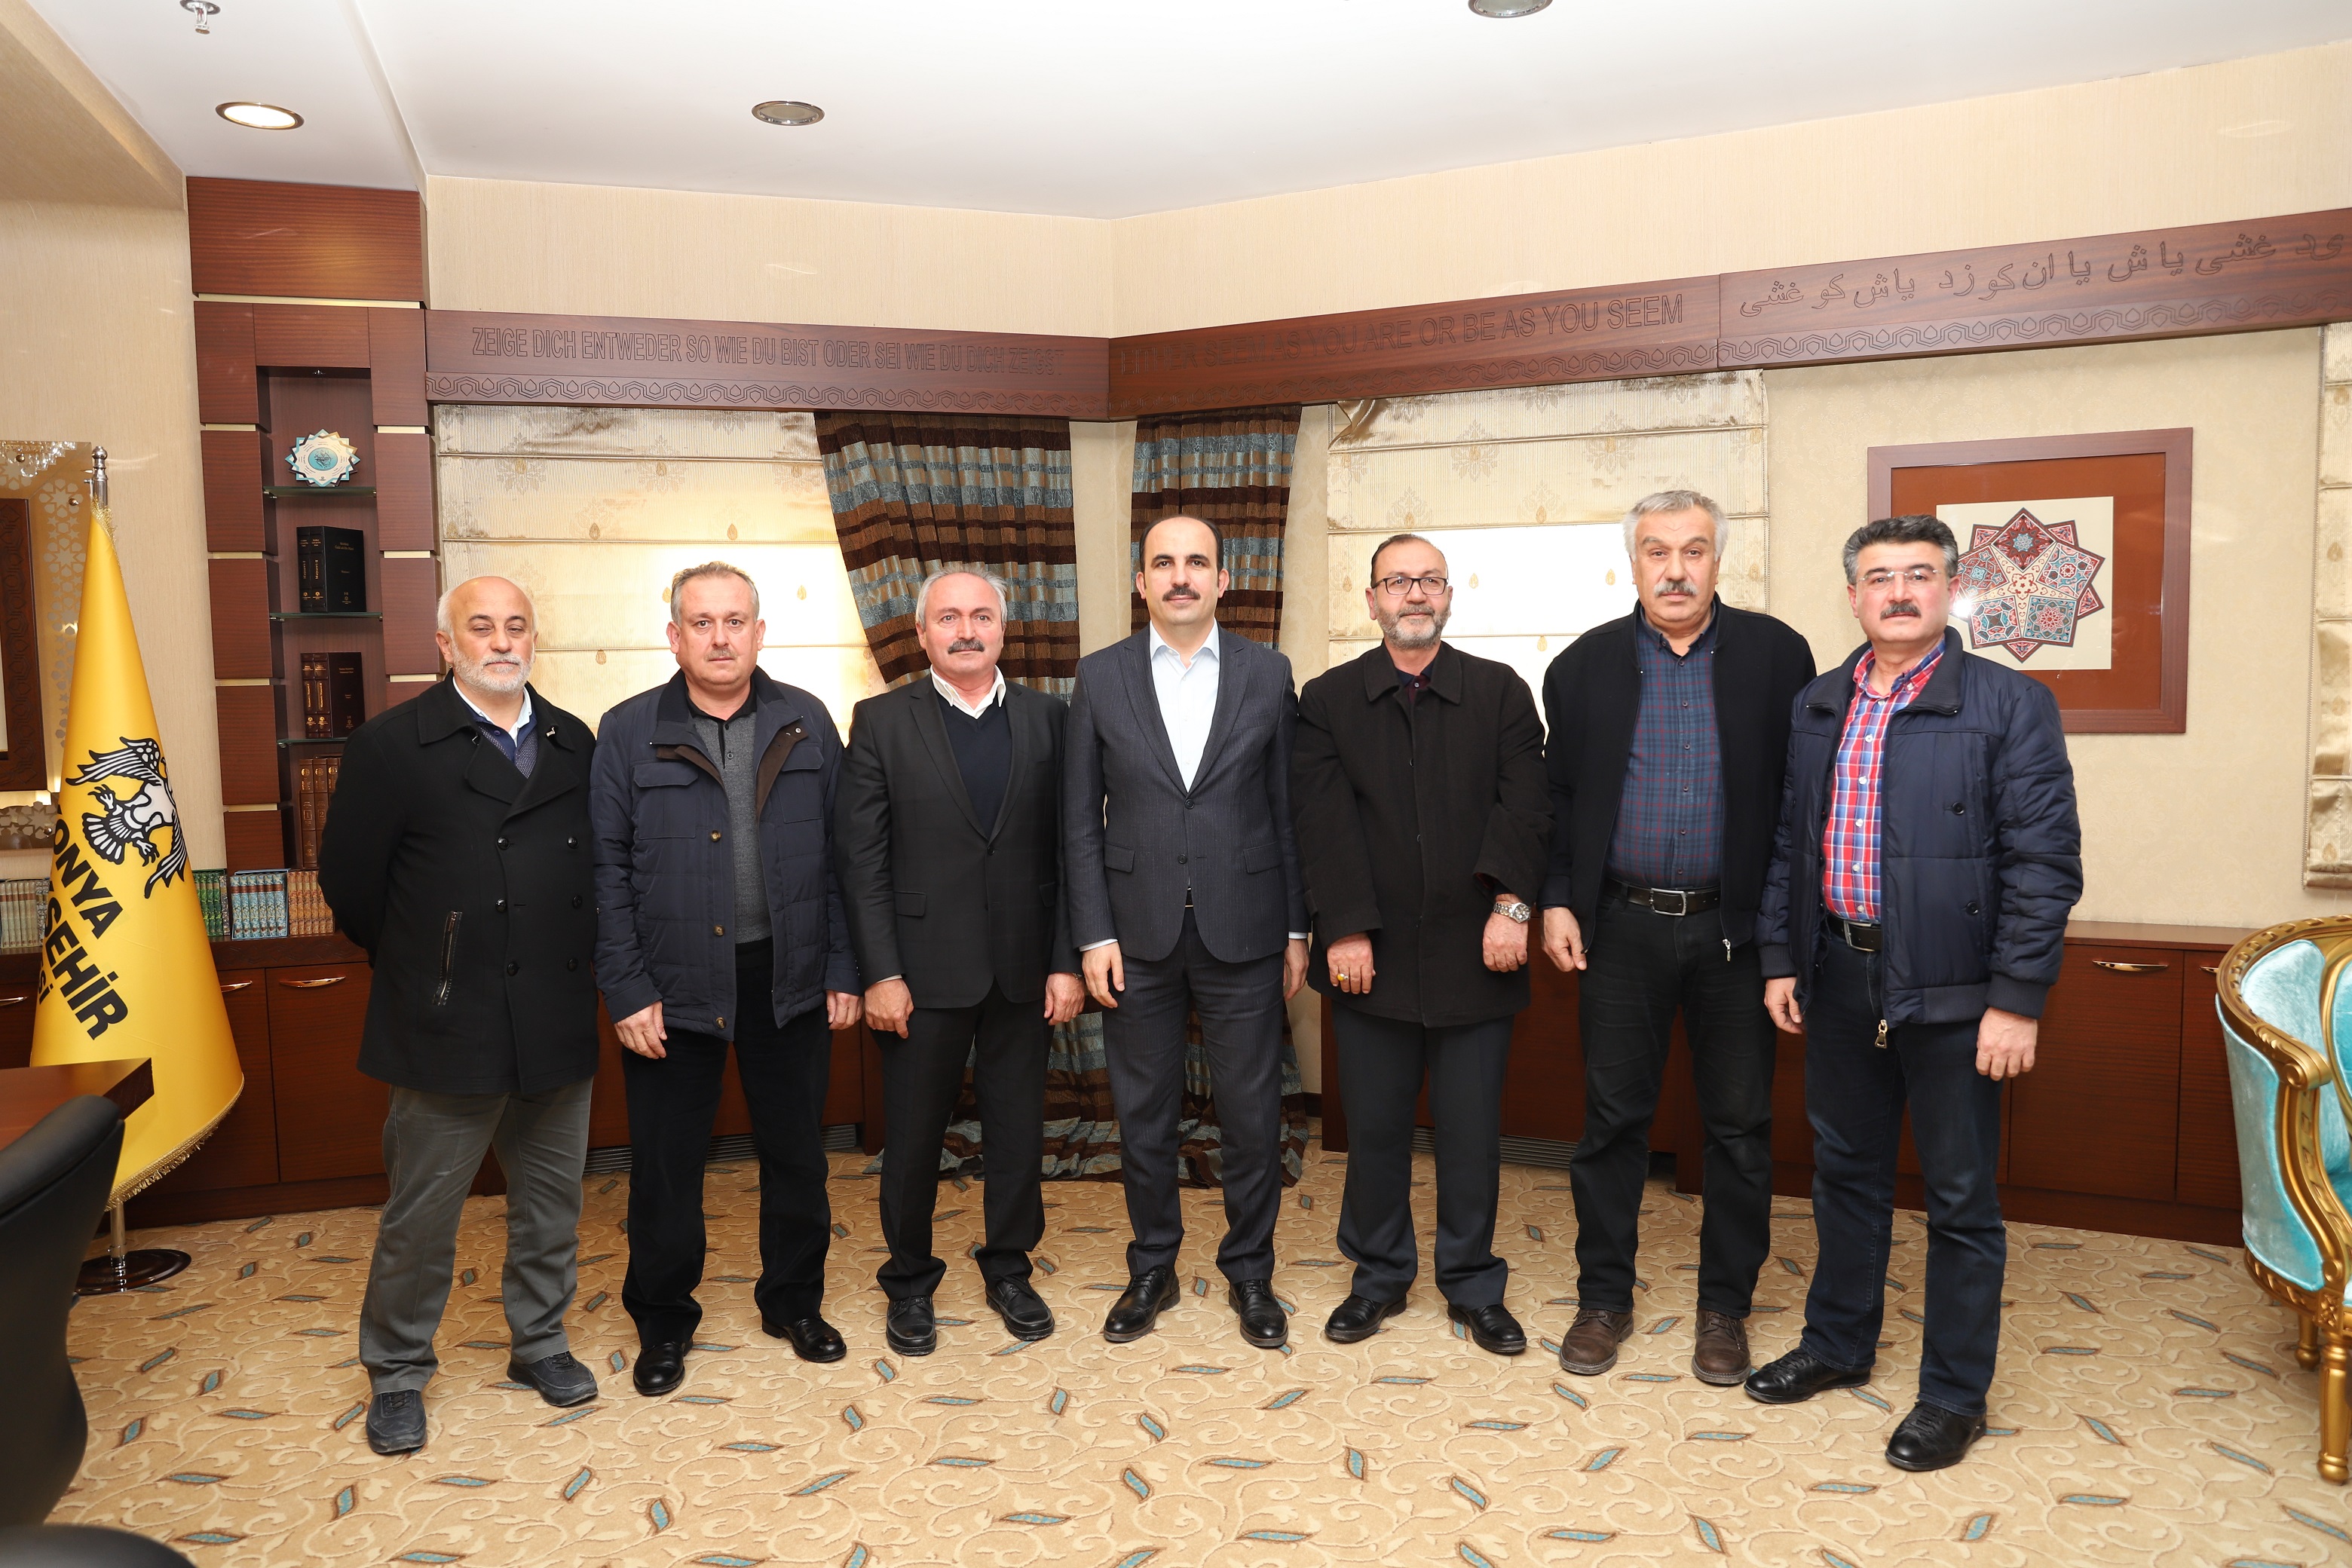 24.12.2018 tarihinde ASMAD Yönetim Kurulu Olarak Konya Büyükşehir Belediye Başkanı Sayın Uğur İbrahim Altay ile yapılan görüşme